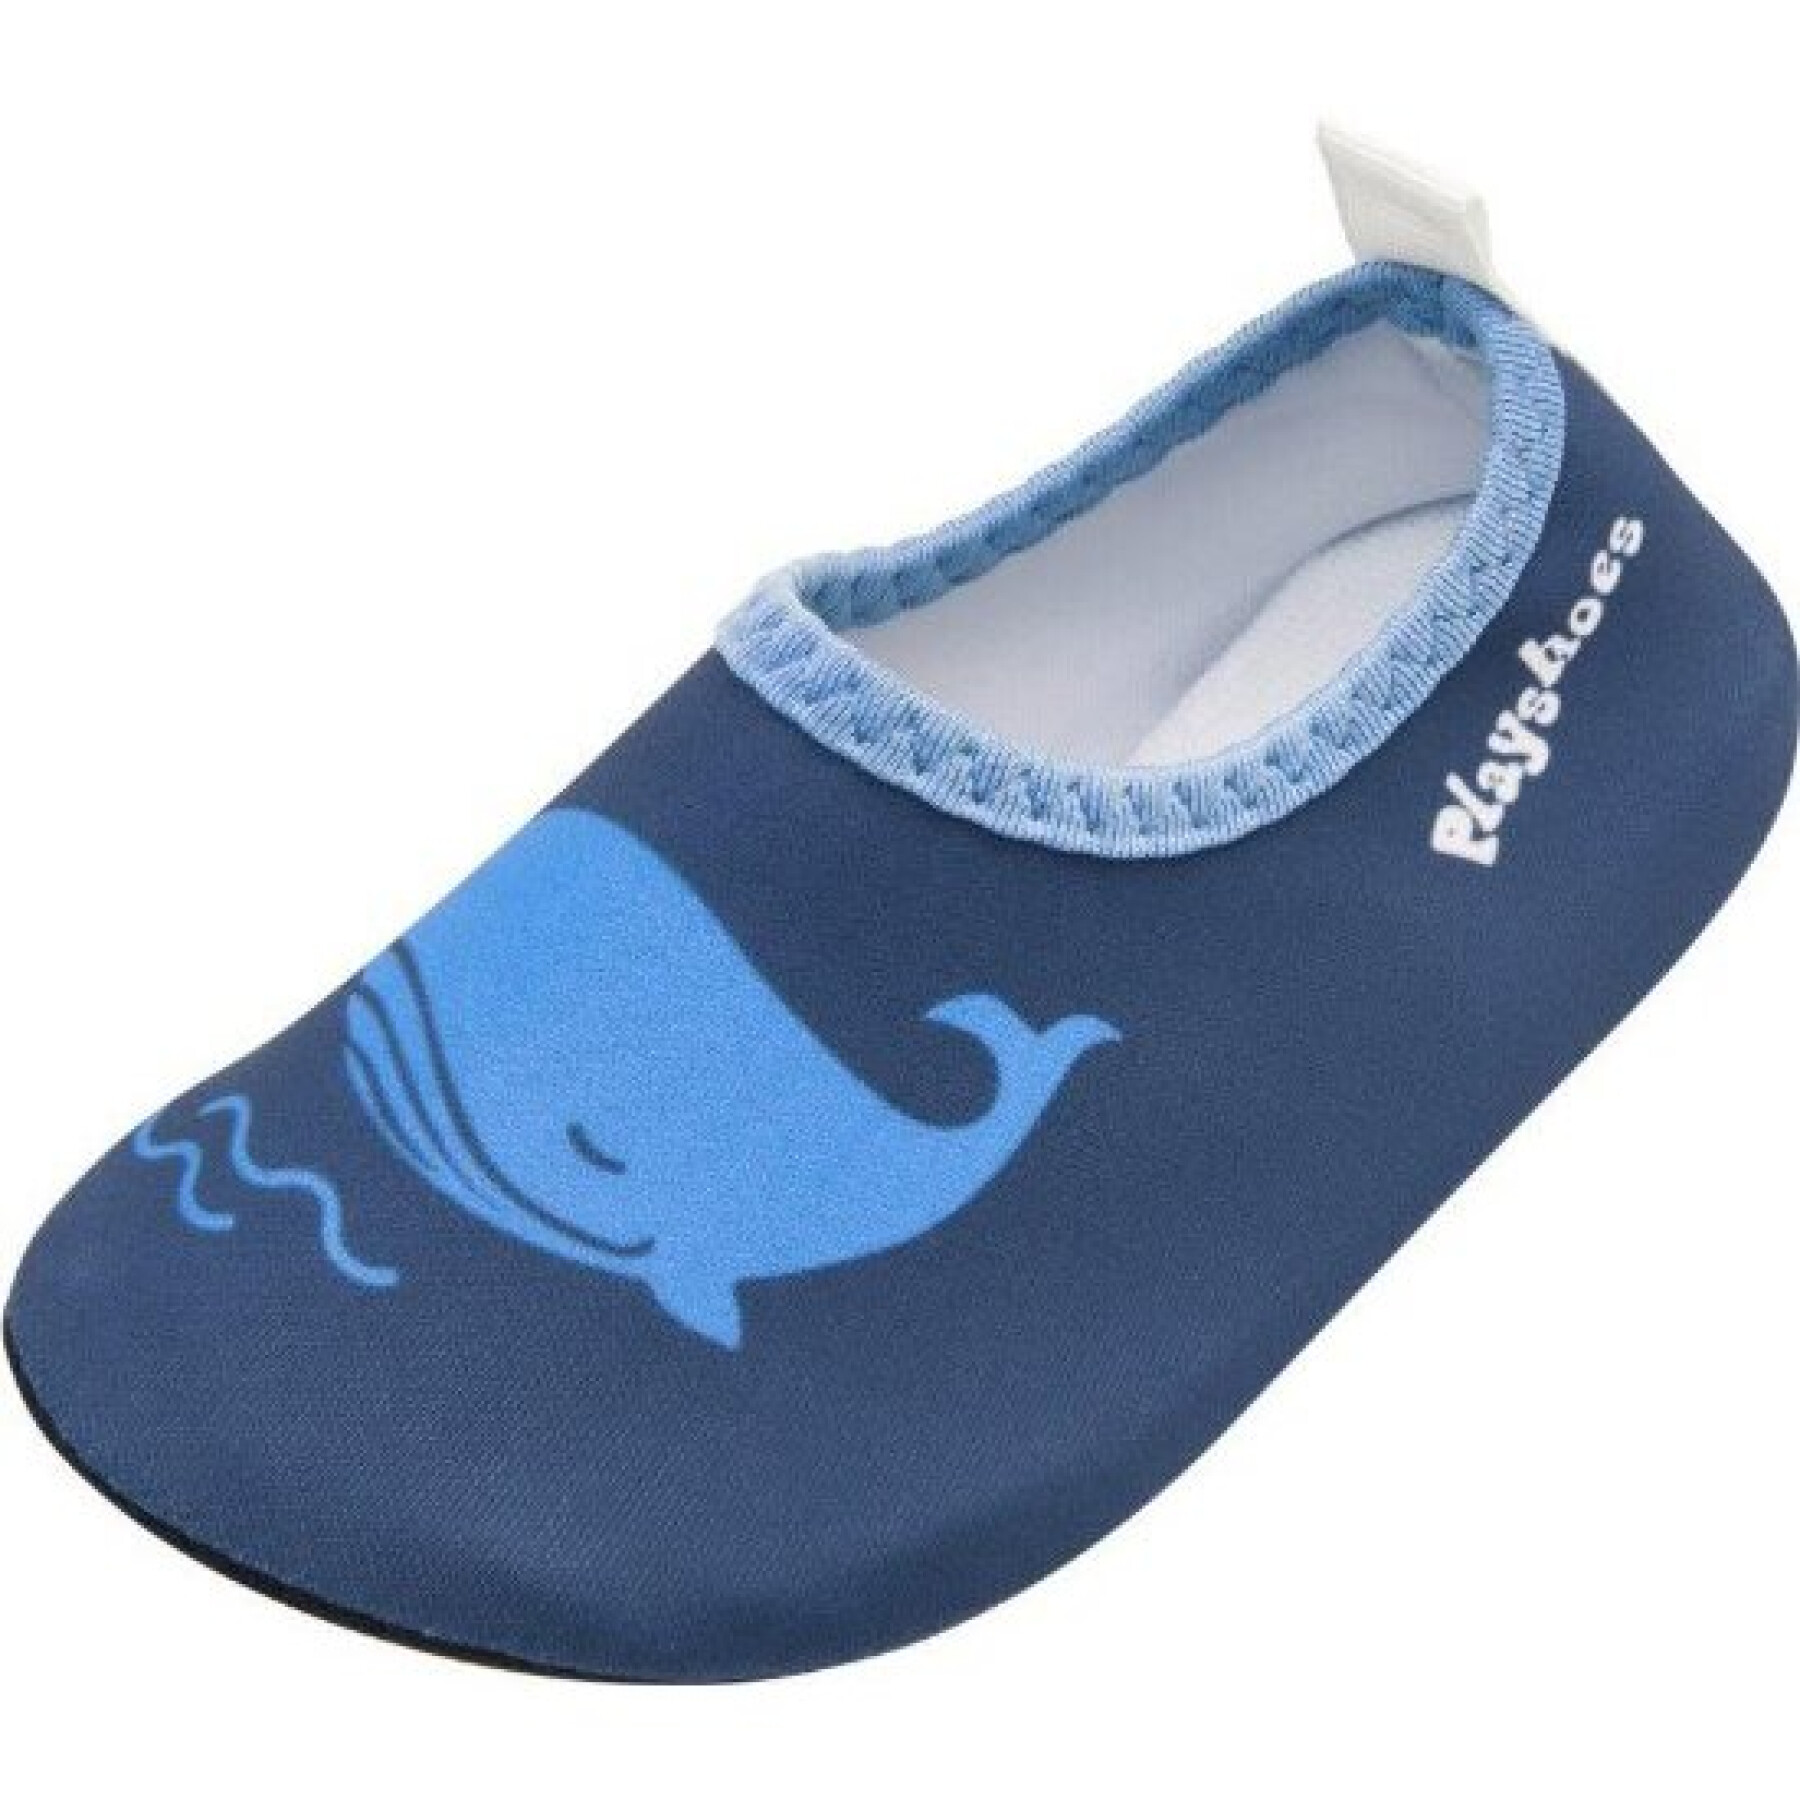 Scarpe da acqua per bambini Playshoes Whale